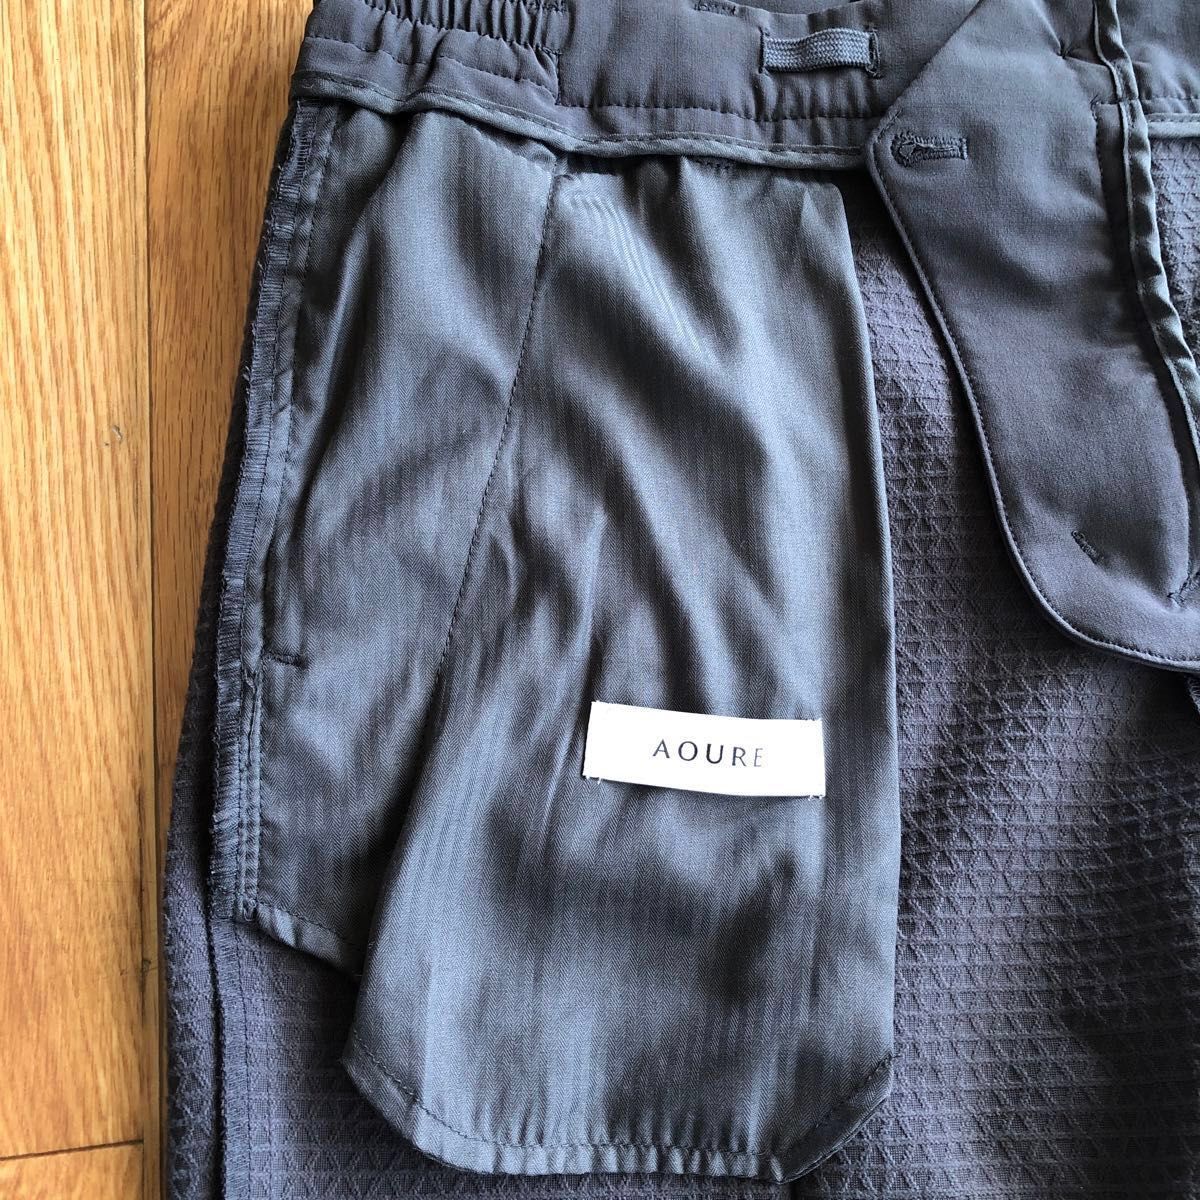 AOURE【新品タグ付き】パンツ スラックス メンズ XLサイズ